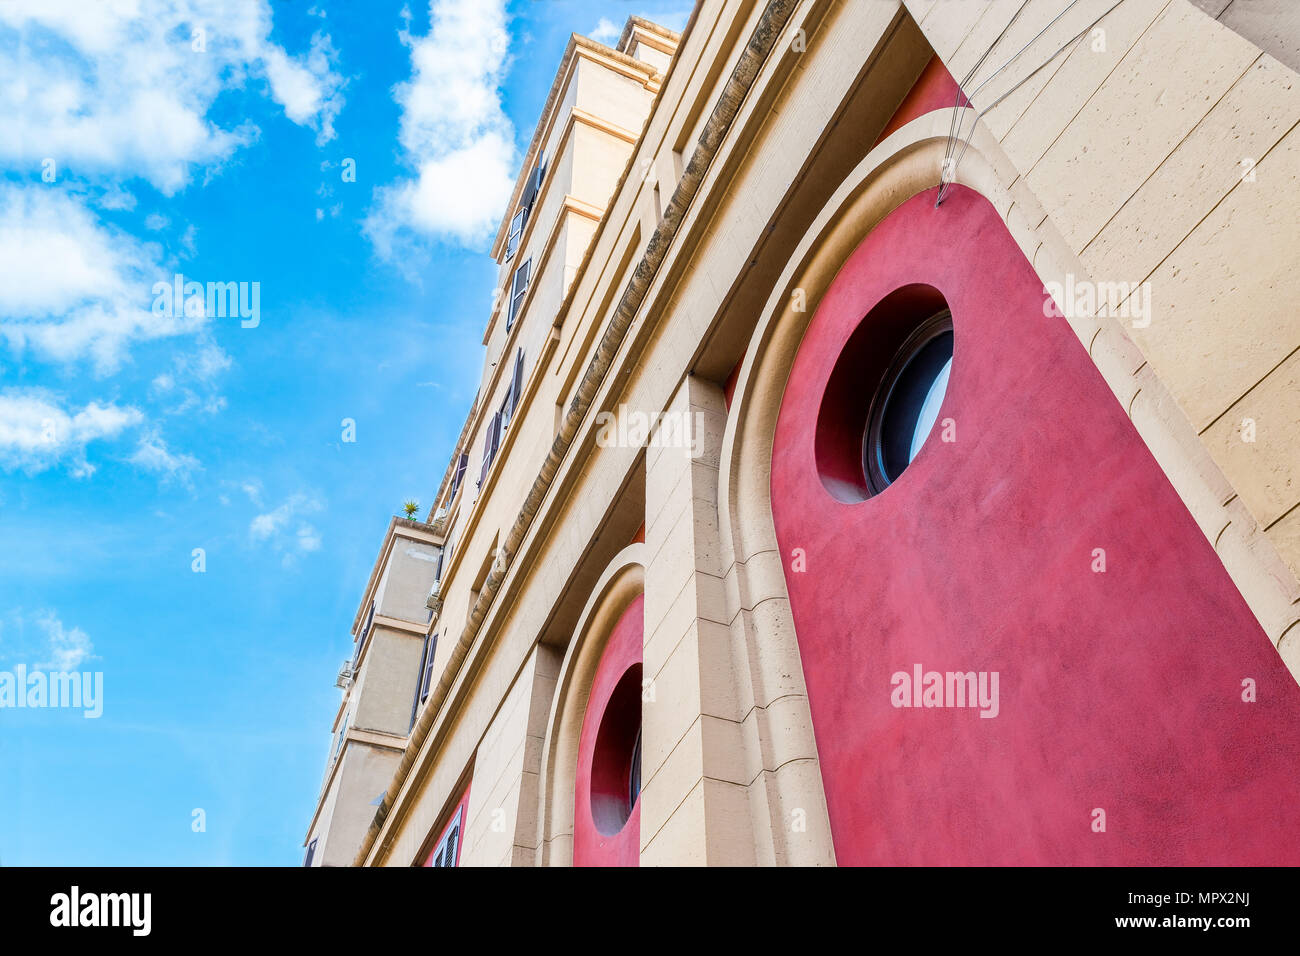 Archi ed elementi architettonici del Teatro Palladium in Roma sotto un cielo nuvoloso Foto Stock